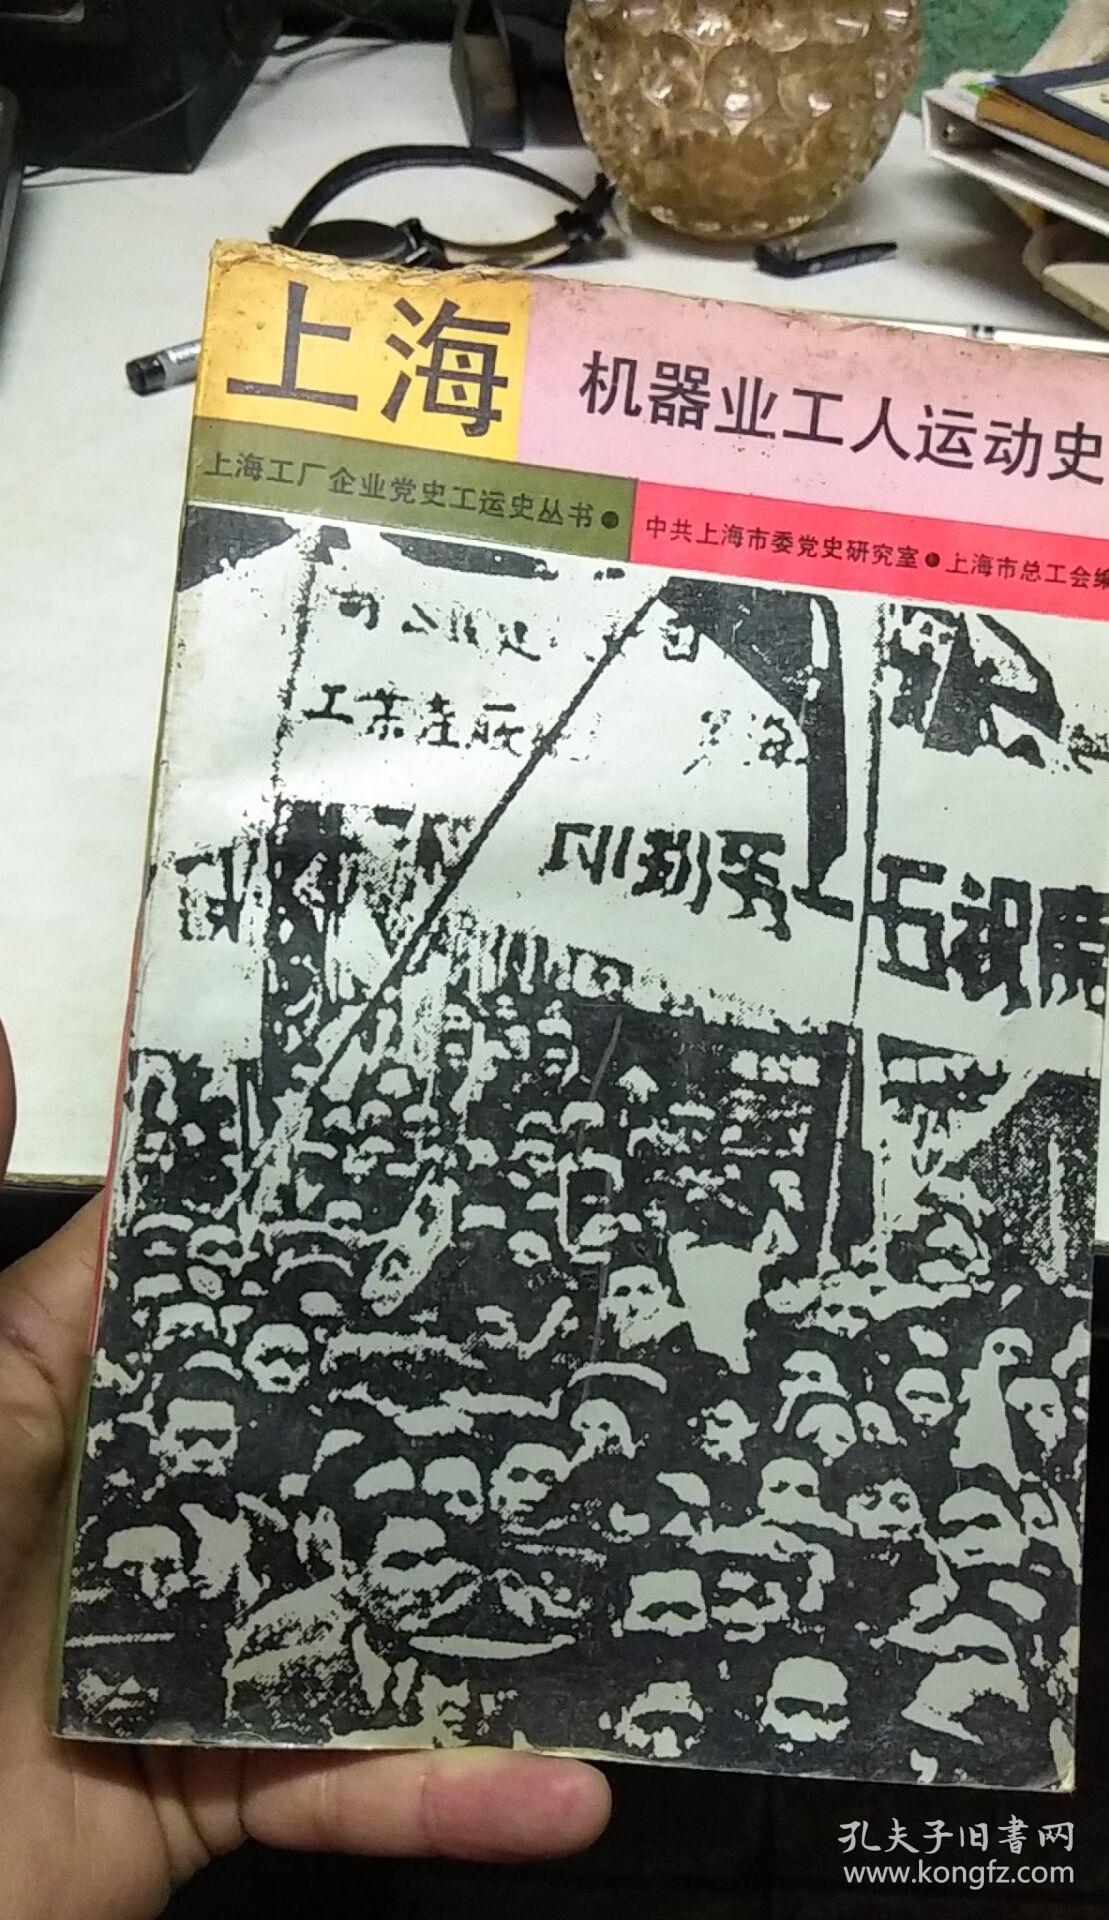 上海机器业工人运动史(书上端少量磨损,无碍阅读,如图